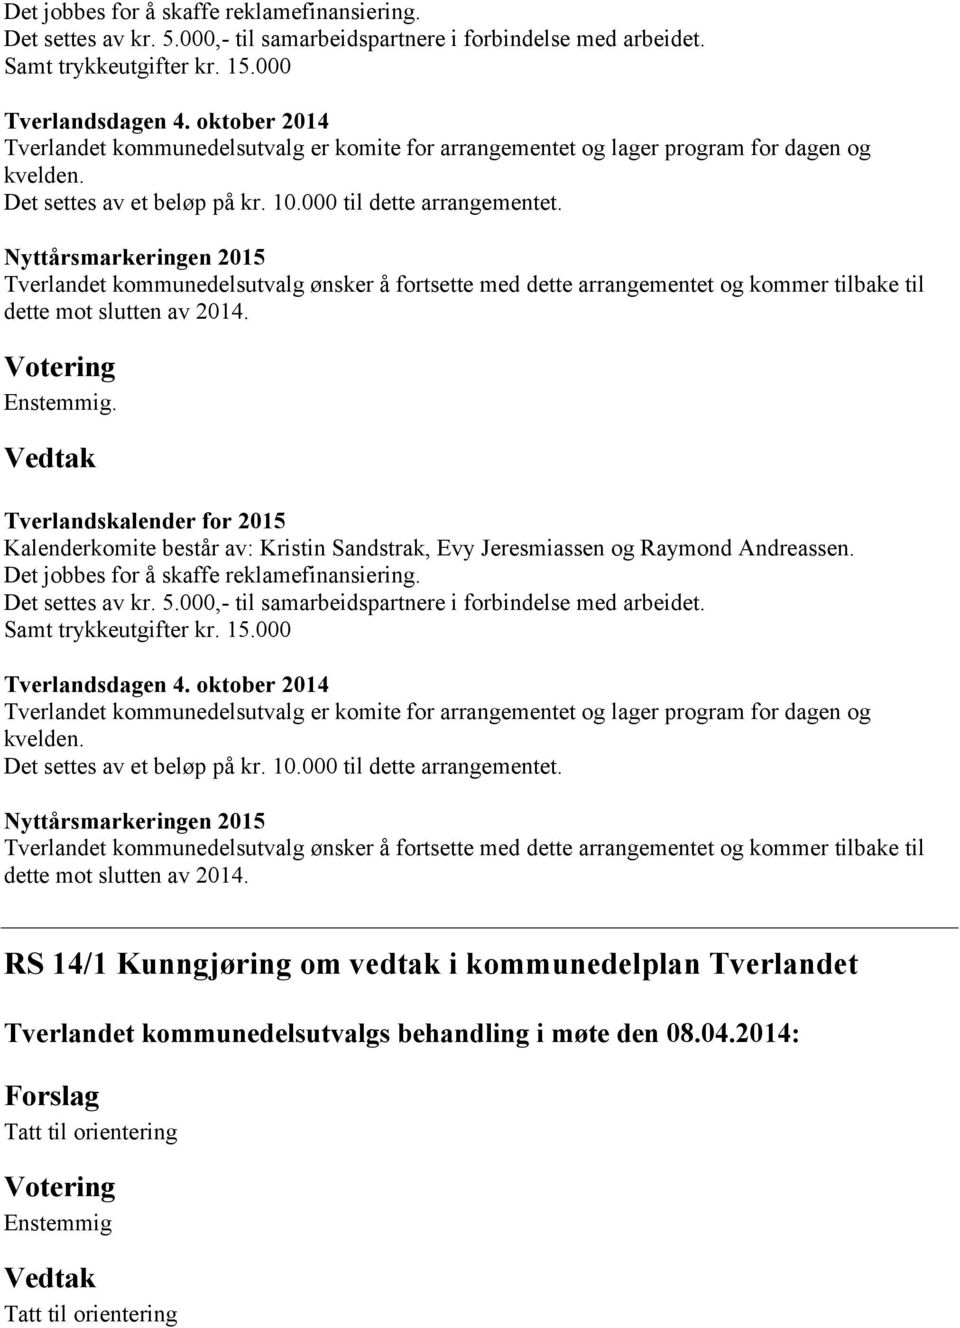 Nyttårsmarkeringen 2015 Tverlandet kommunedelsutvalg ønsker å fortsette med dette arrangementet og kommer tilbake til dette mot slutten av 2014. Enstemmig.